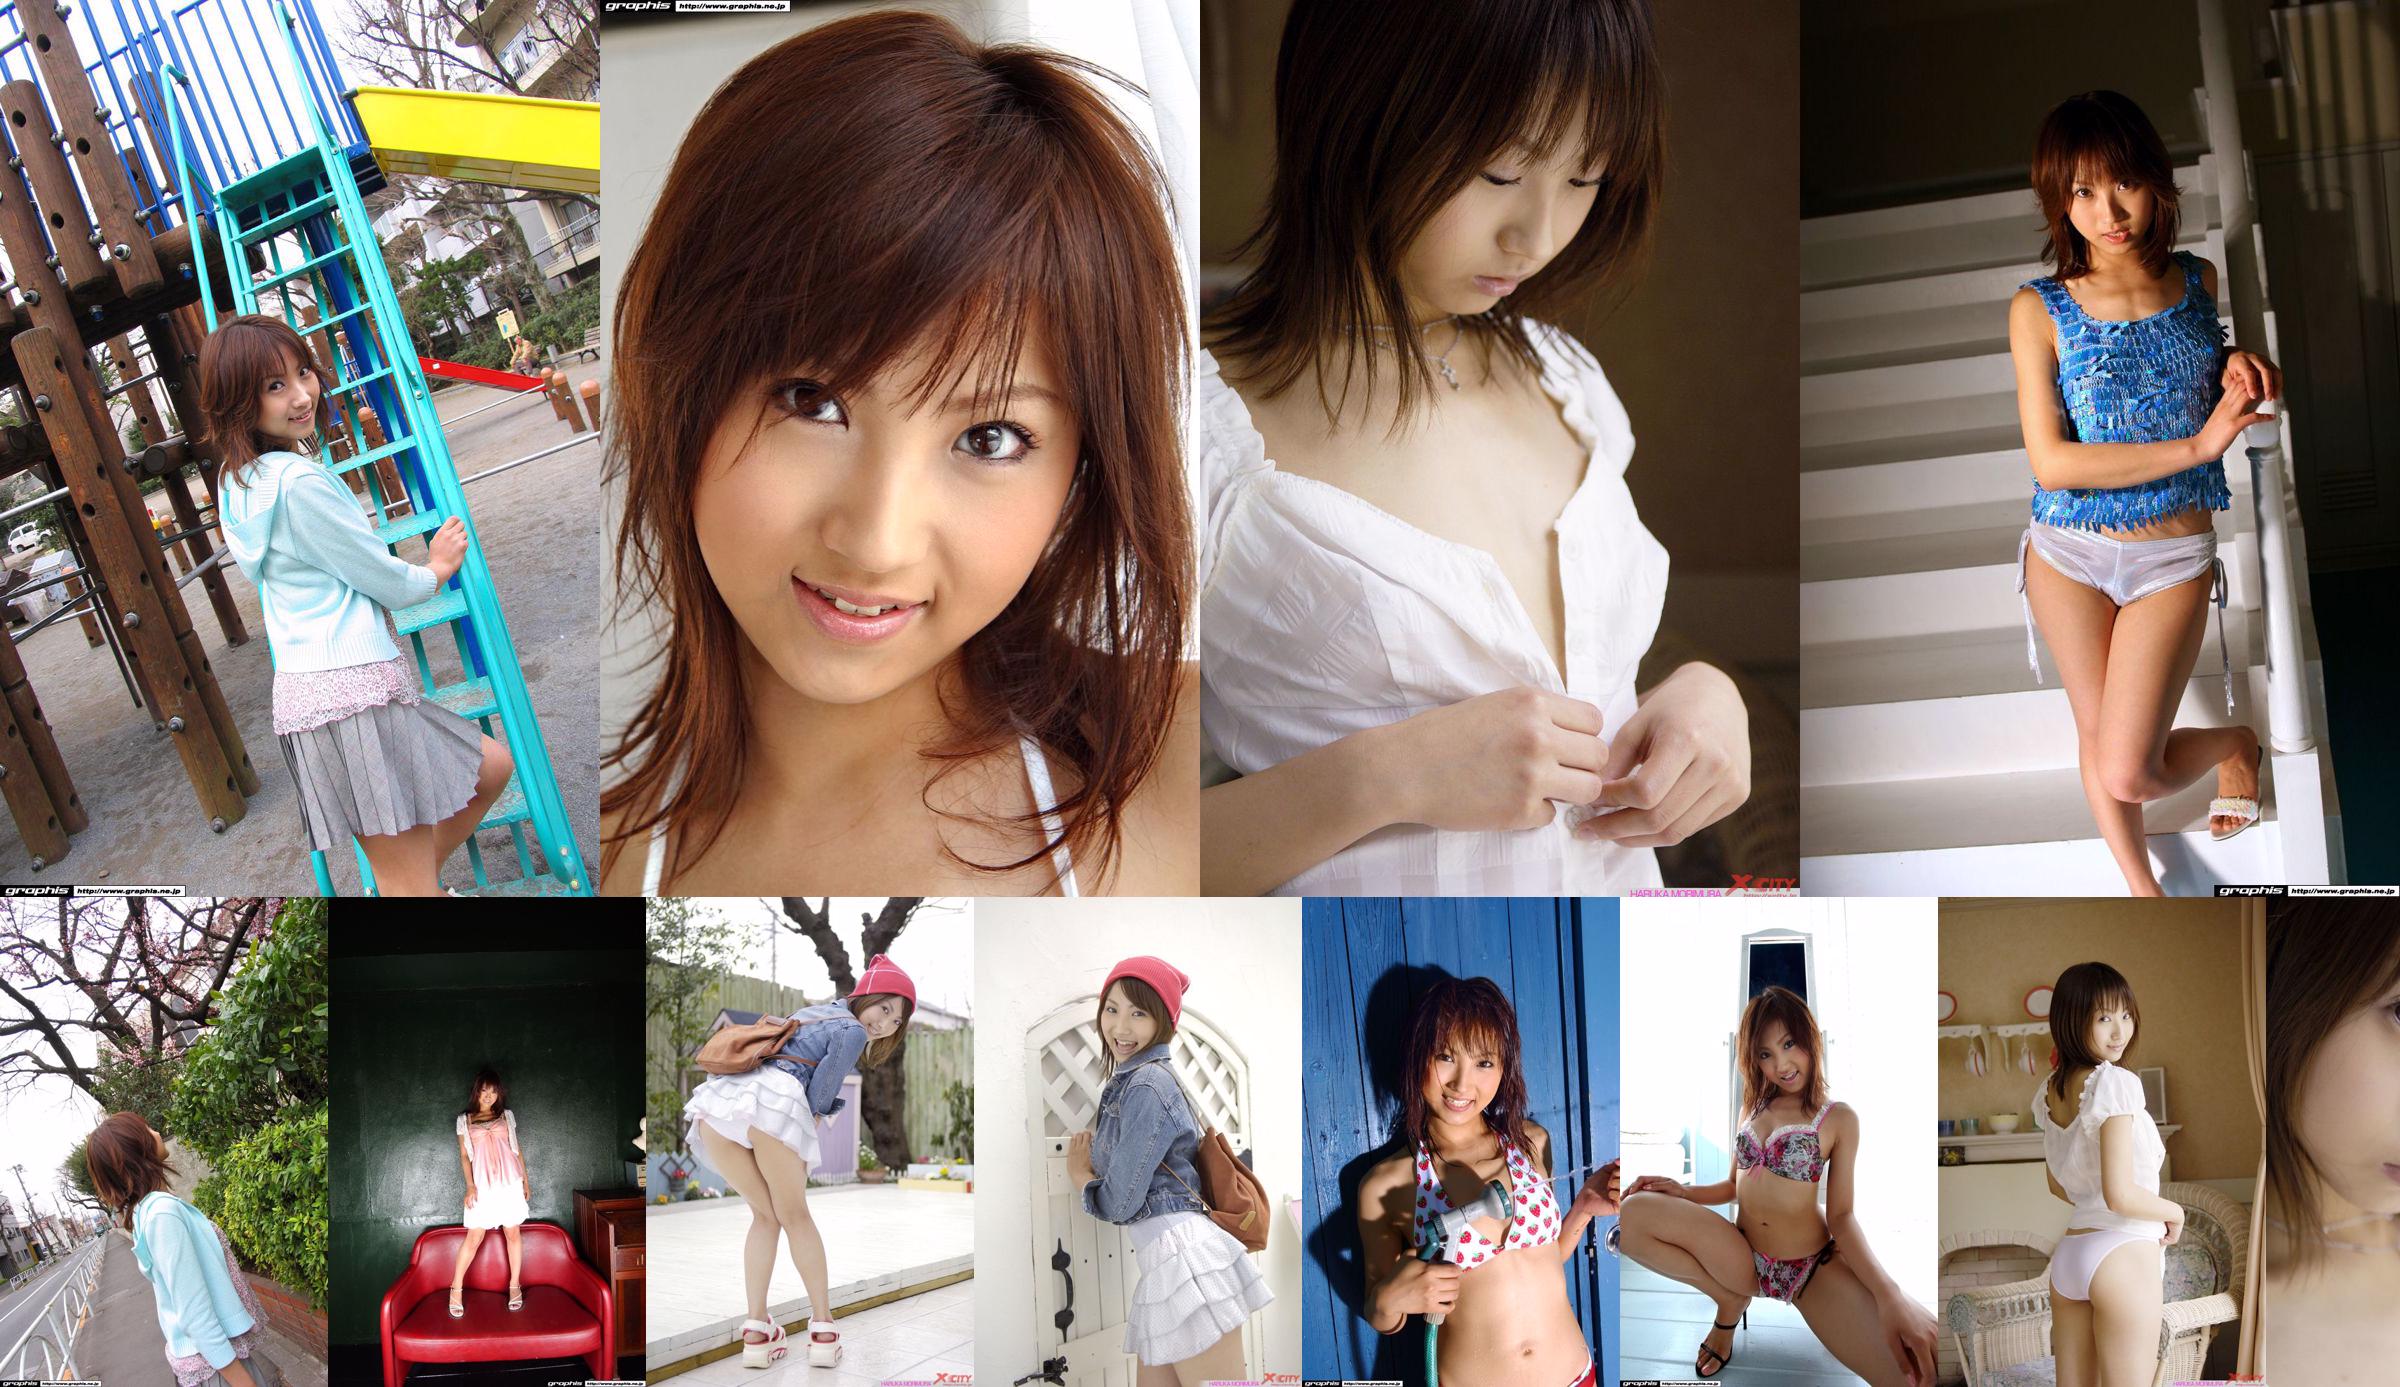 [X-City] WEB No.012 Haruka Morimura / Morimura Haruka "Morning Girl" No.818f04 Trang 1